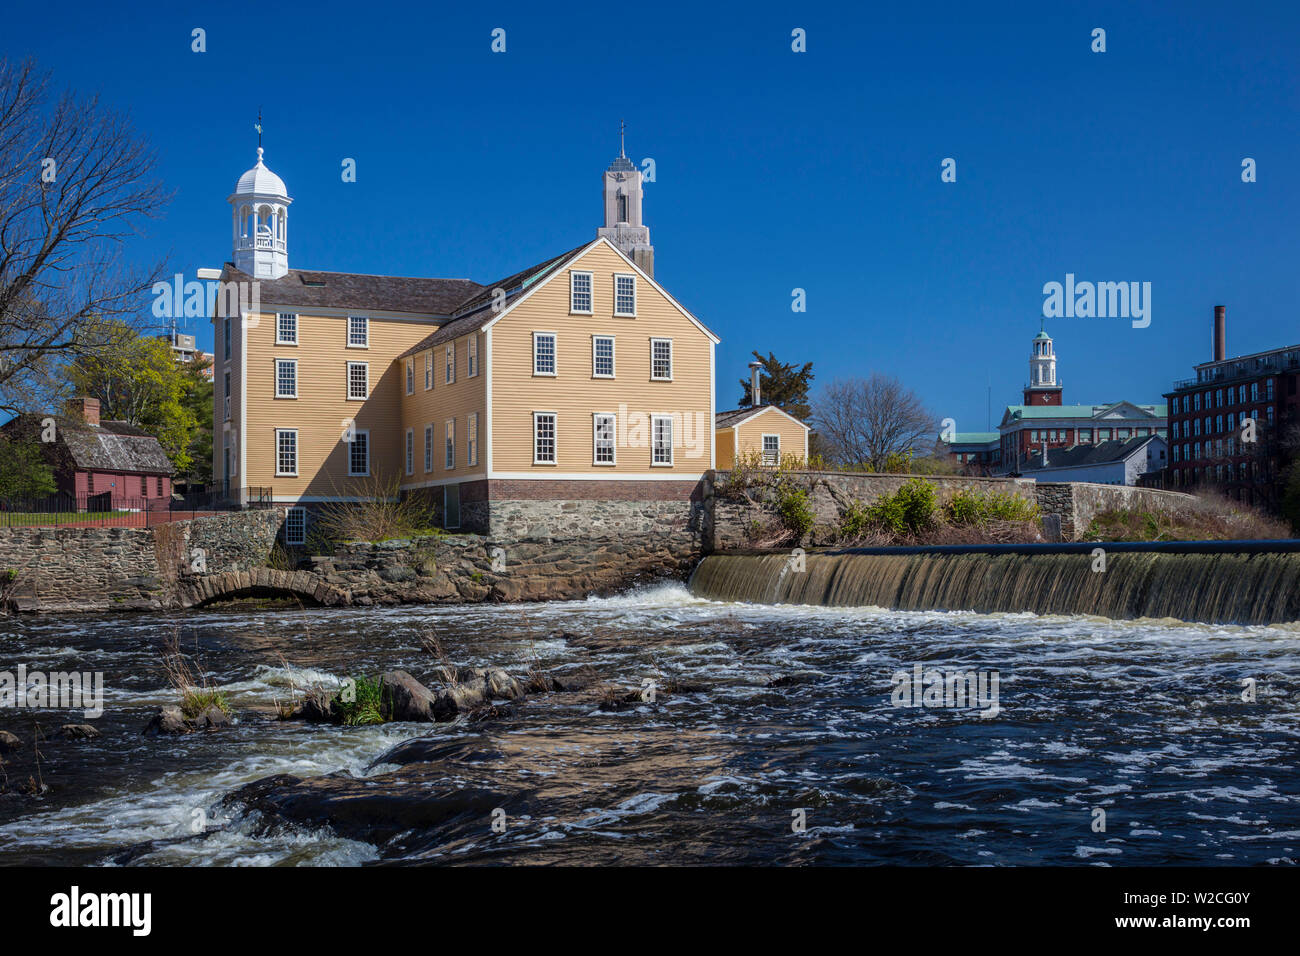 USA, Rhode Island, Pawtucket, Slater Mill Historic Site, fonctionnant à l'eau La première filature de coton en Amérique du Nord, construit en 1793 Banque D'Images